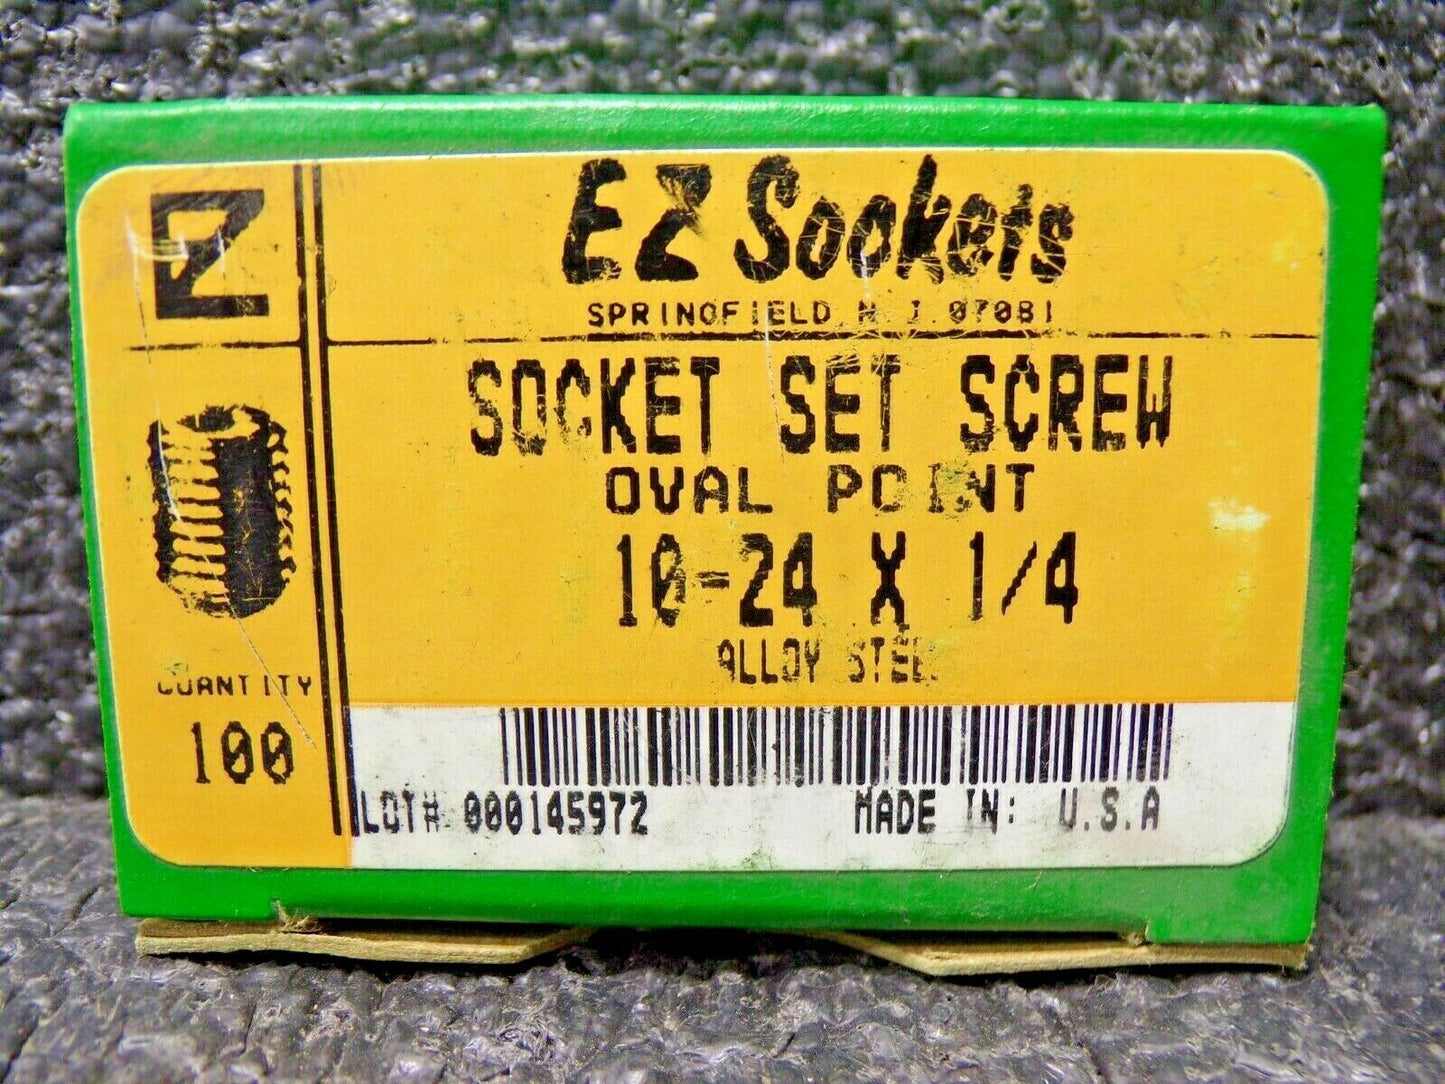 E Z SOCKETS, SOCKET SET SCREW, 10-24 X 1/4, OVAL POINT, ALLOY, PK100 (183789201324-NBT16)